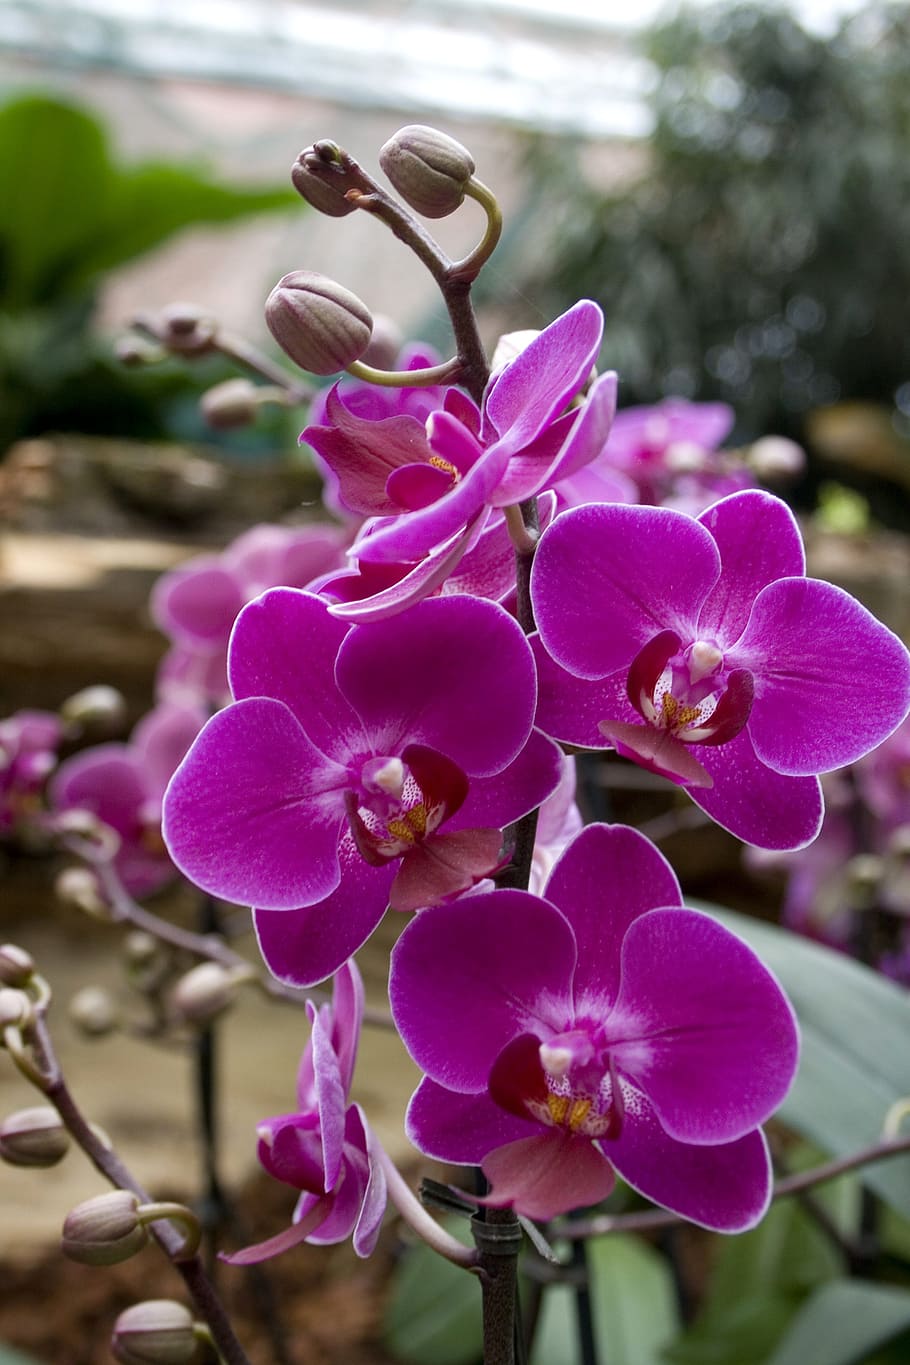 Orchids, Flowers, Blossom, Bloom, Purple, plant, purple flower, nature, flower, petal